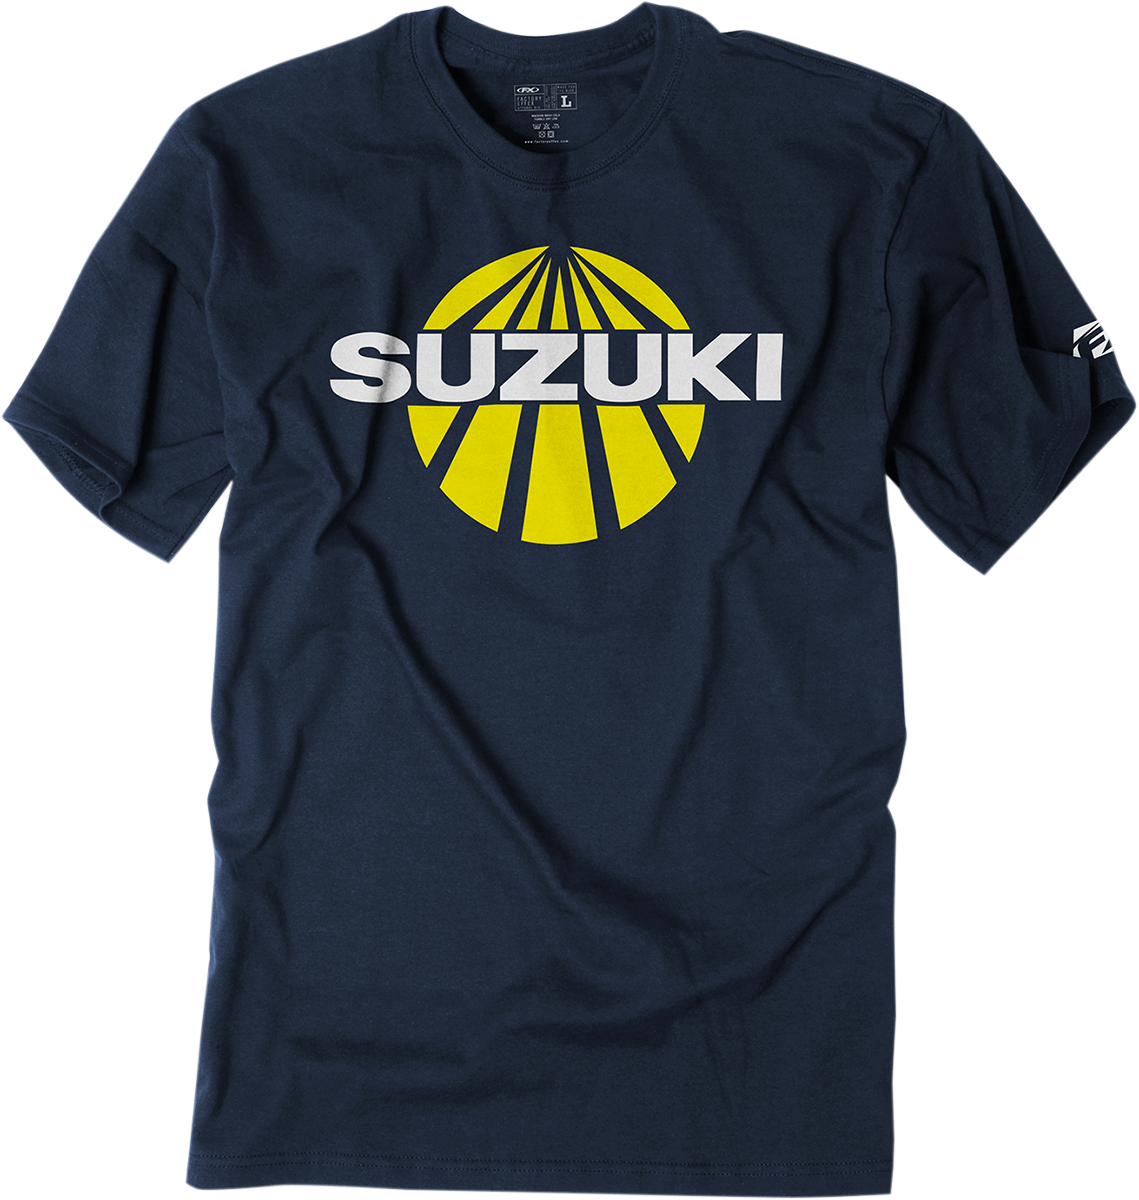 FACTORY EFFEX Suzuki Sun Camiseta - Azul marino - Grande 19-87404 